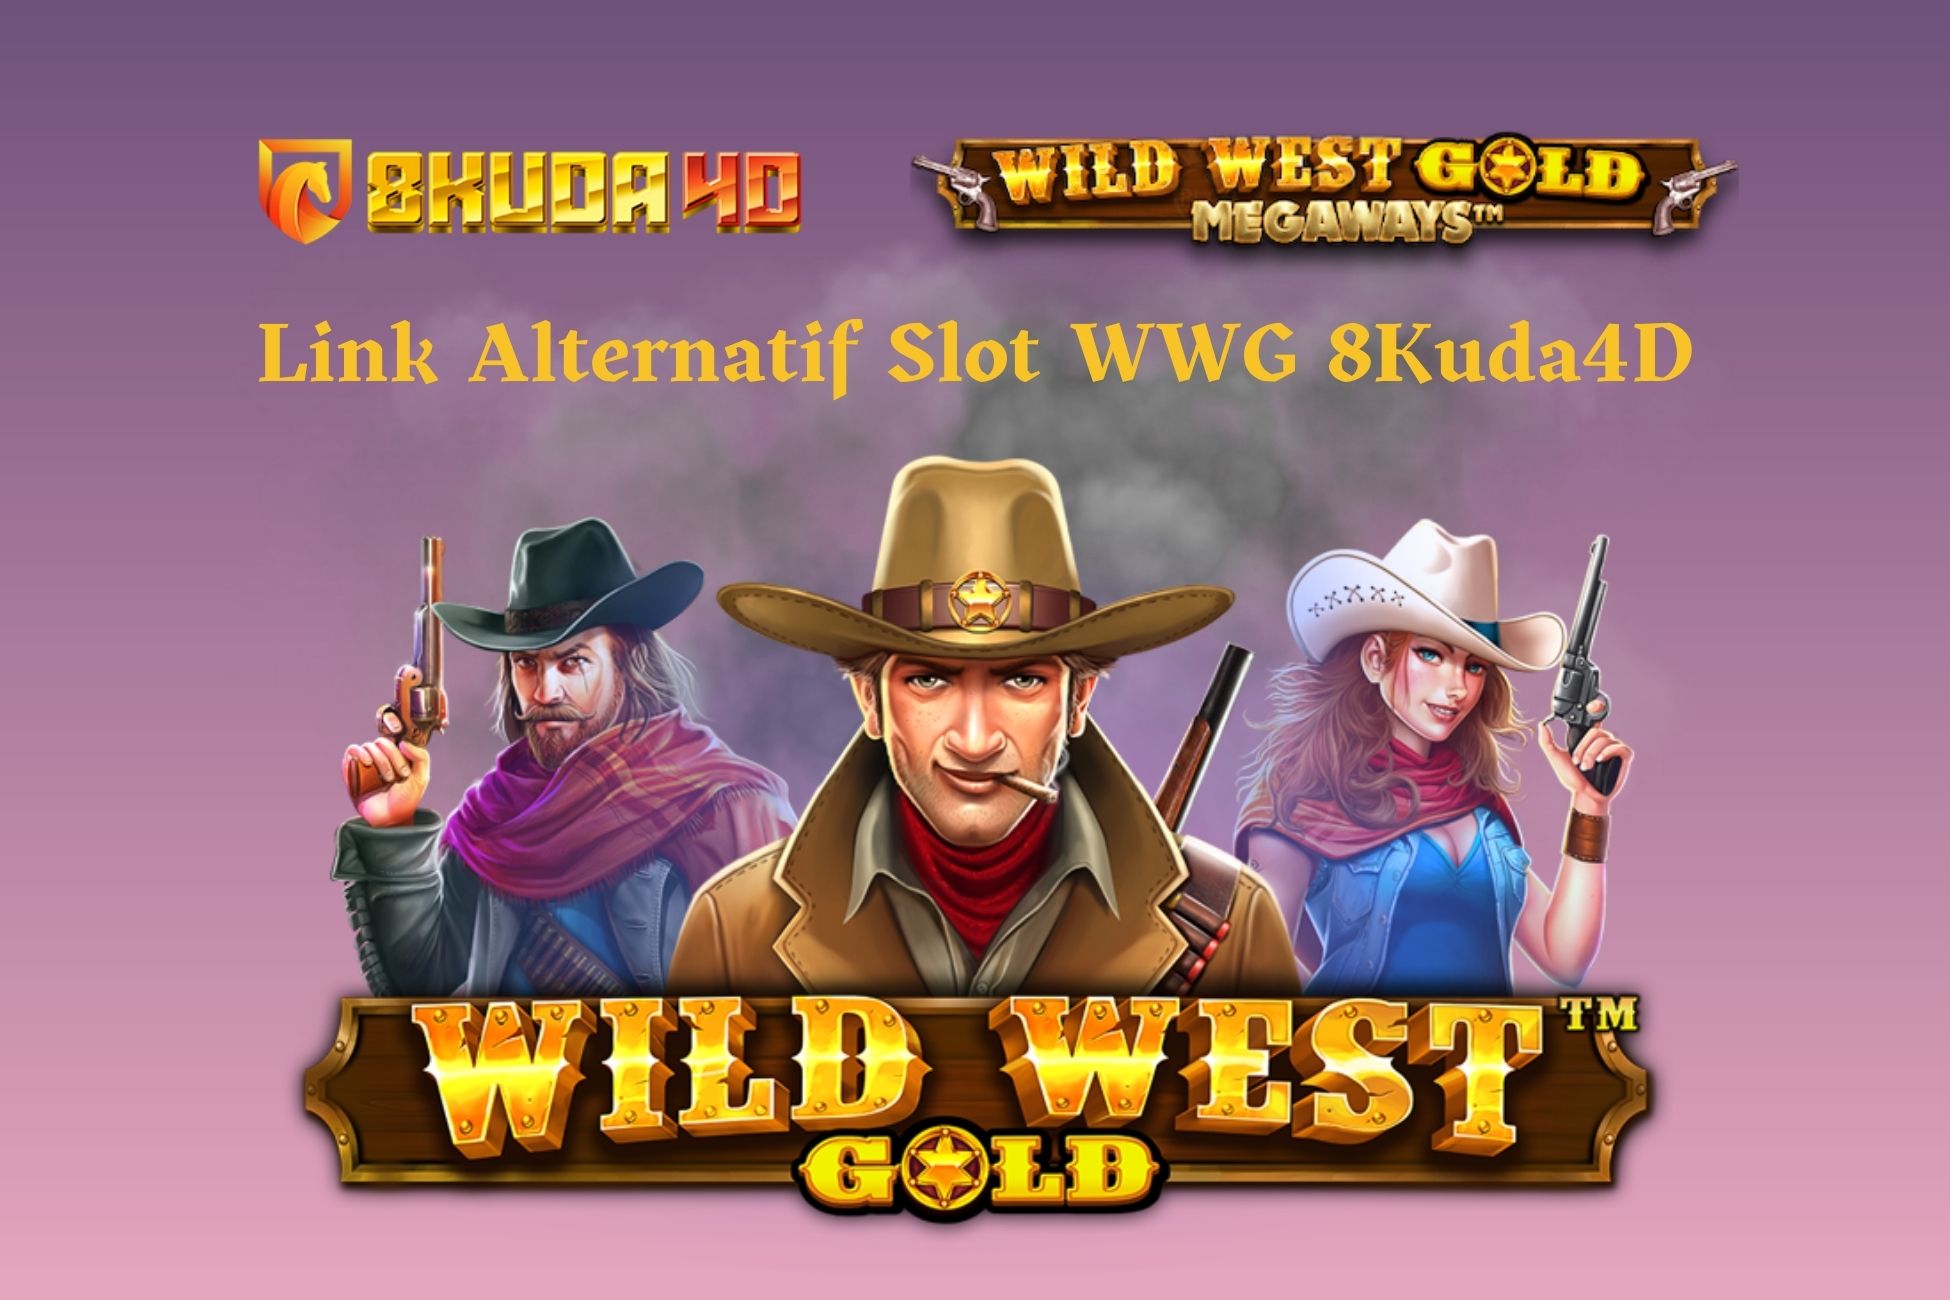 Link Alternatif Slot WWG 8Kuda4D